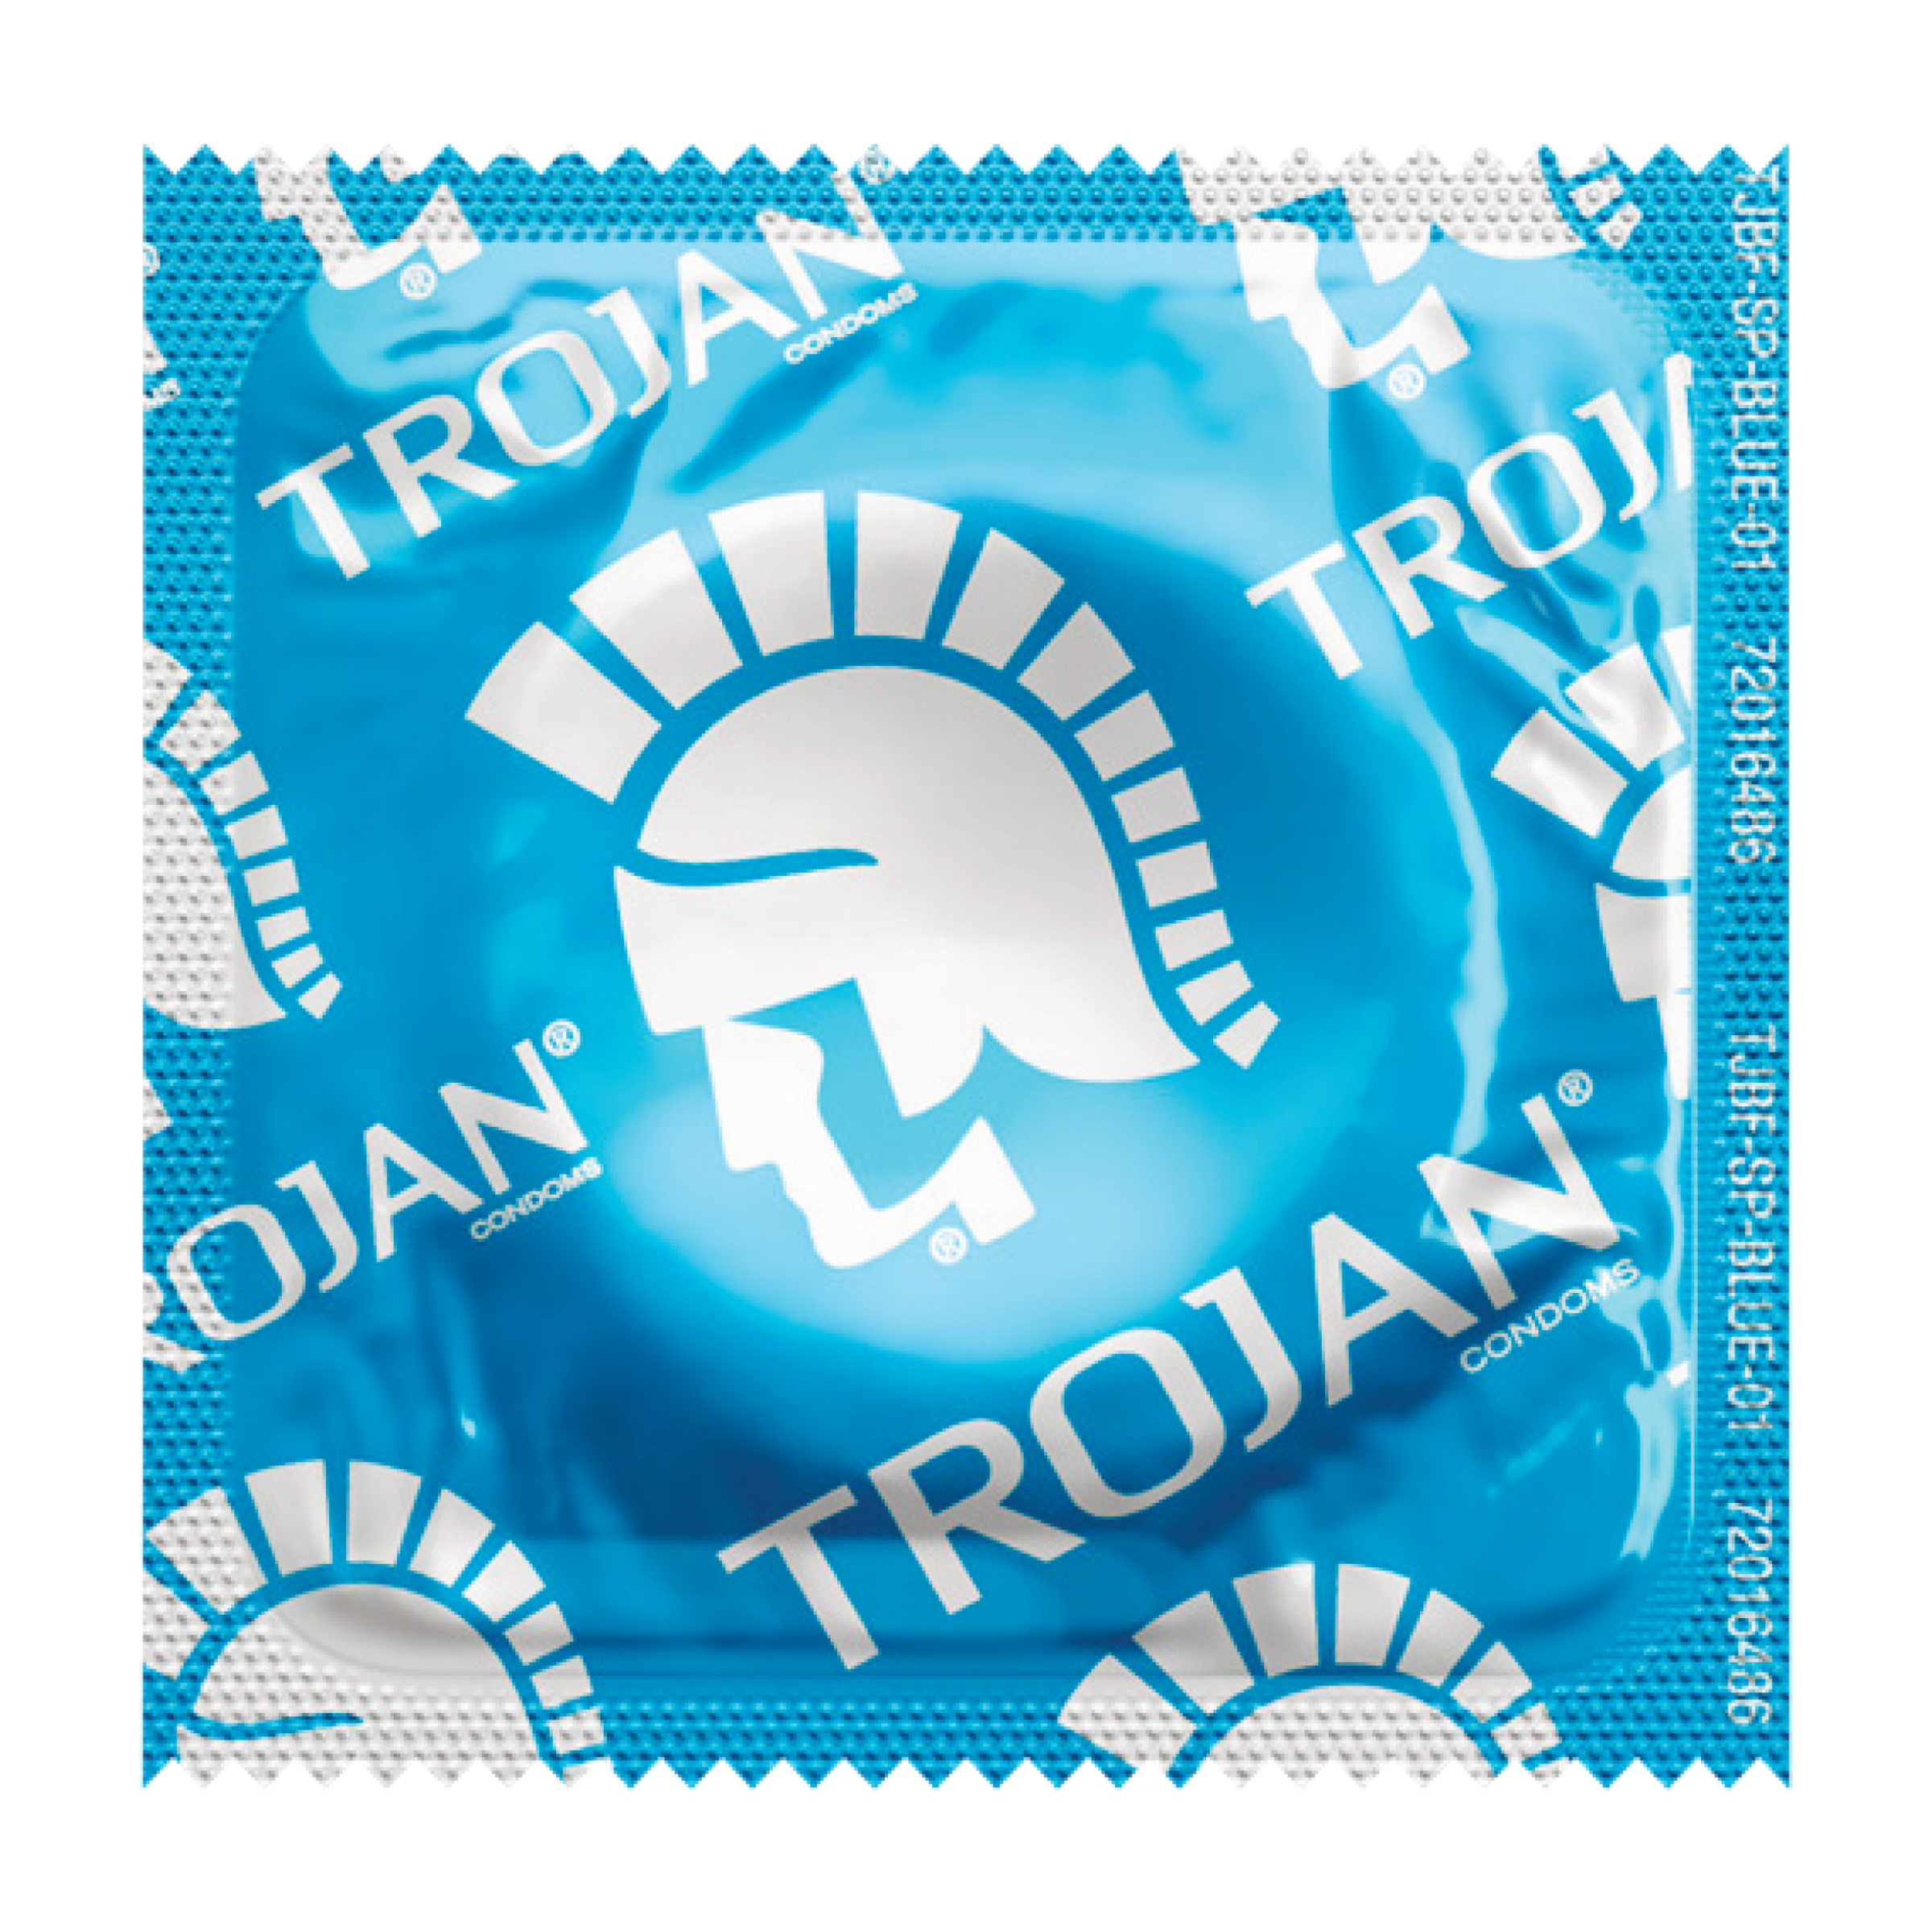 Trojan ENZ, Case of 1000